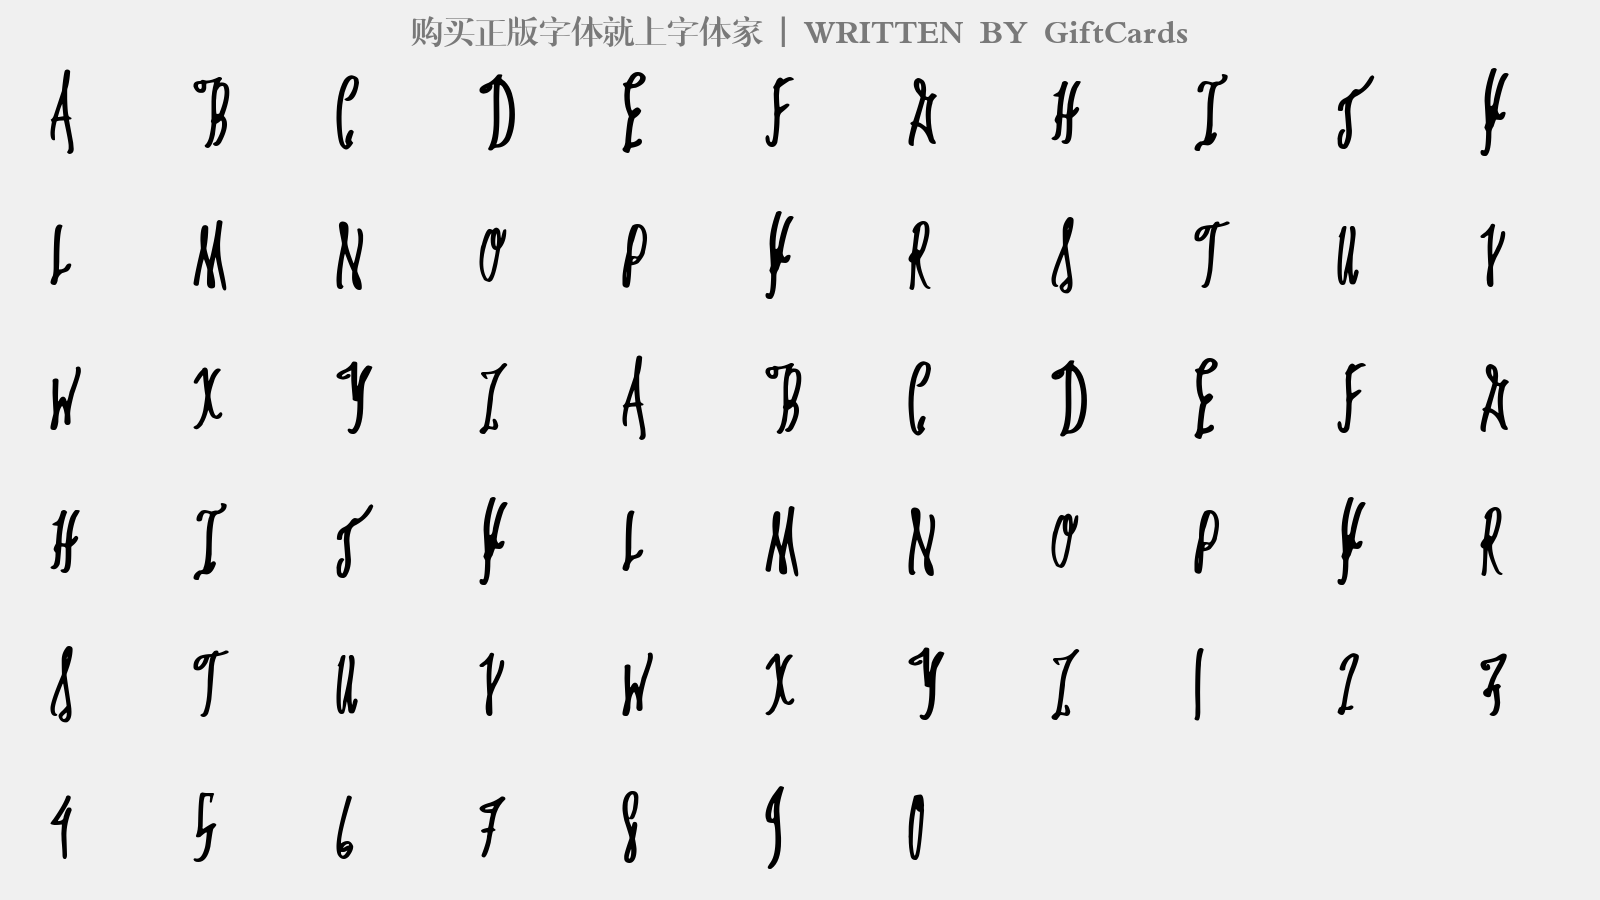 GiftCards - 大写字母/小写字母/数字